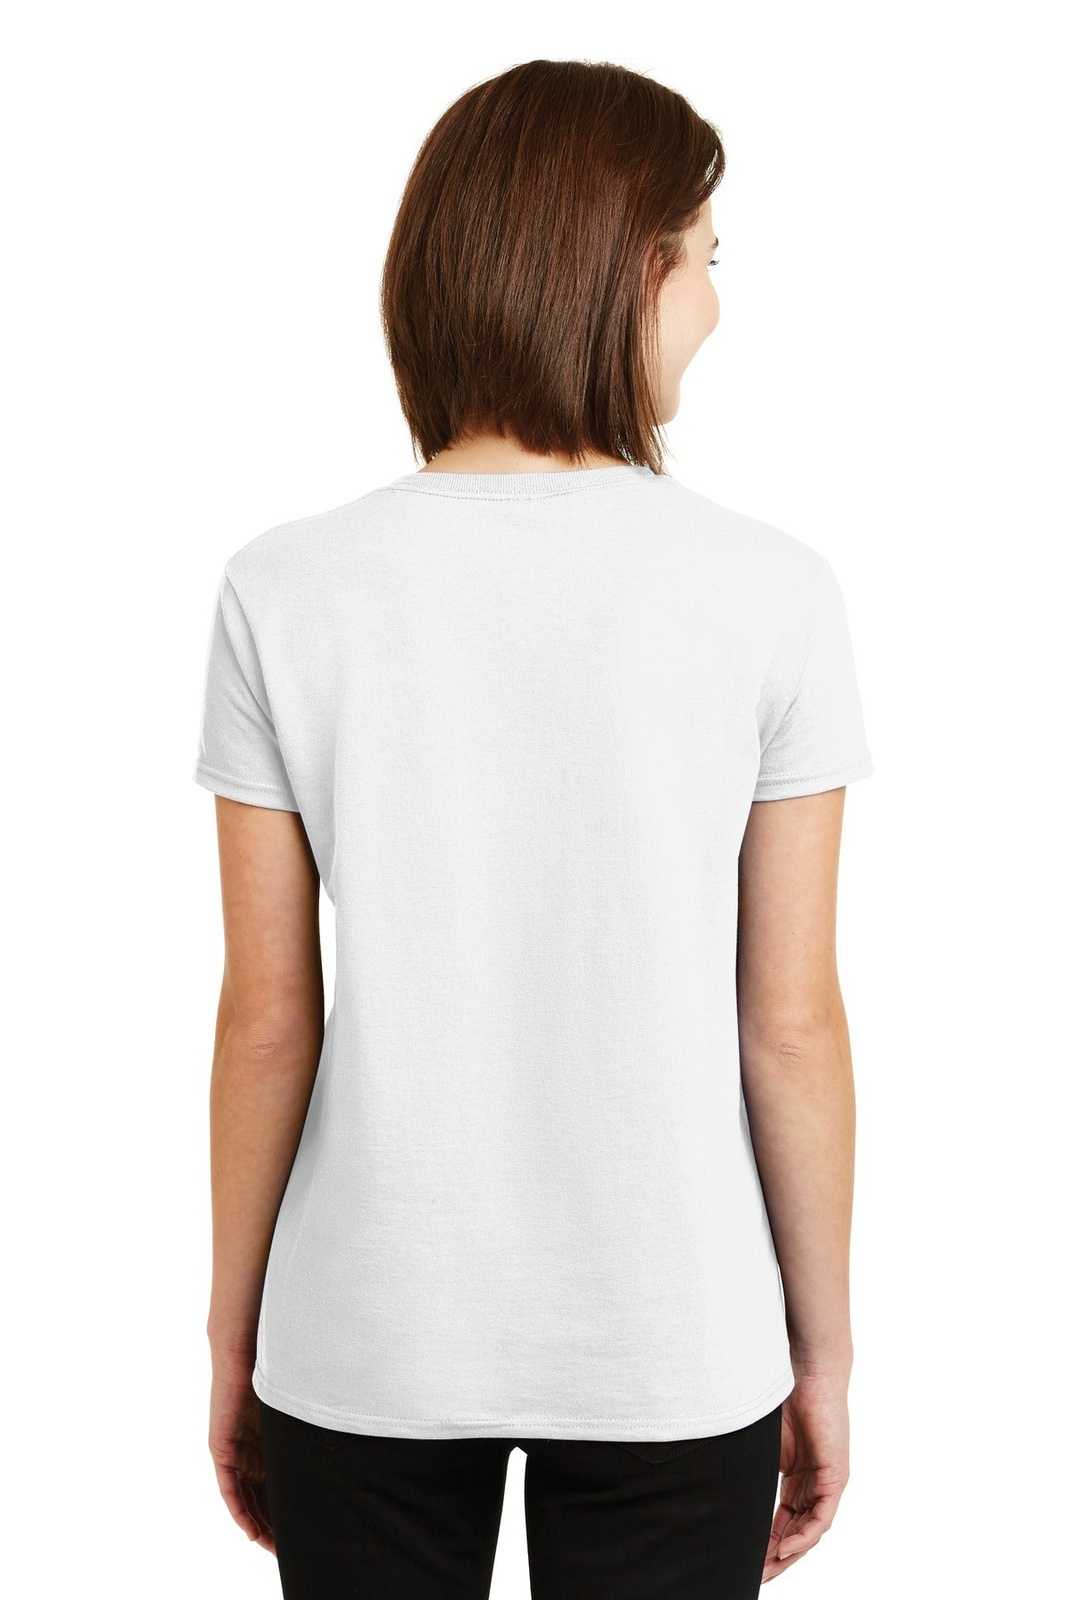 Gildan 2000L Ladies Ultra Cotton 100% Cotton T-Shirt - White - HIT a Double